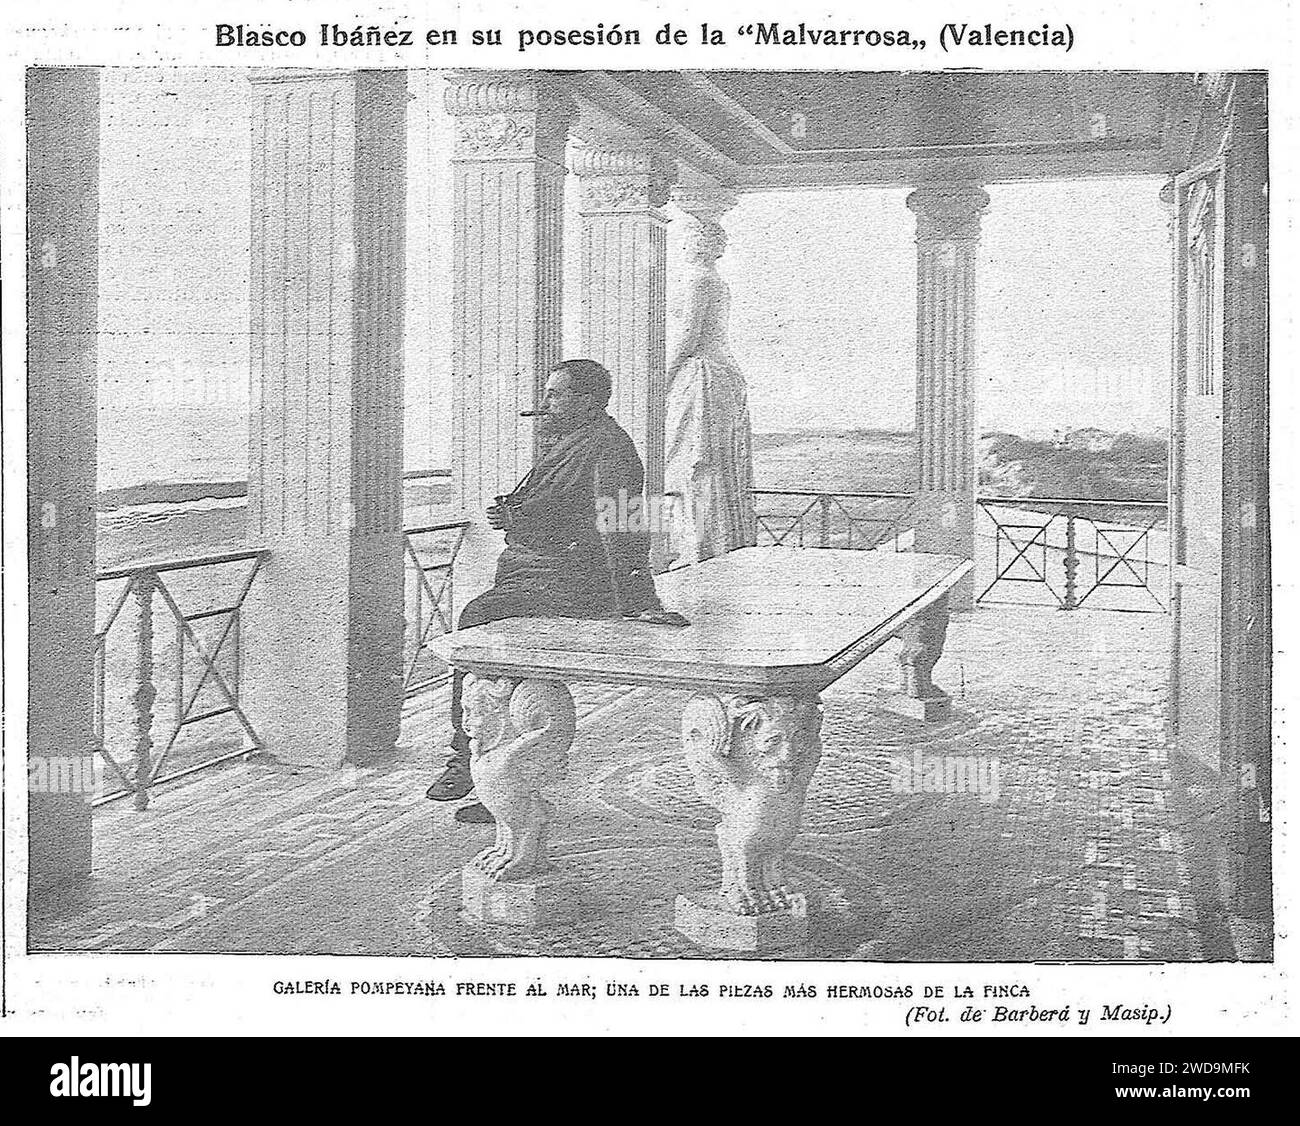 1904-07-08, El Gráfico, Blasco Ibáñez en su posesión de la “Malvarrosa„ (Valencia), Galería pompeyana frente al mar, una de las piezas más hermosas de la finca. Stock Photo